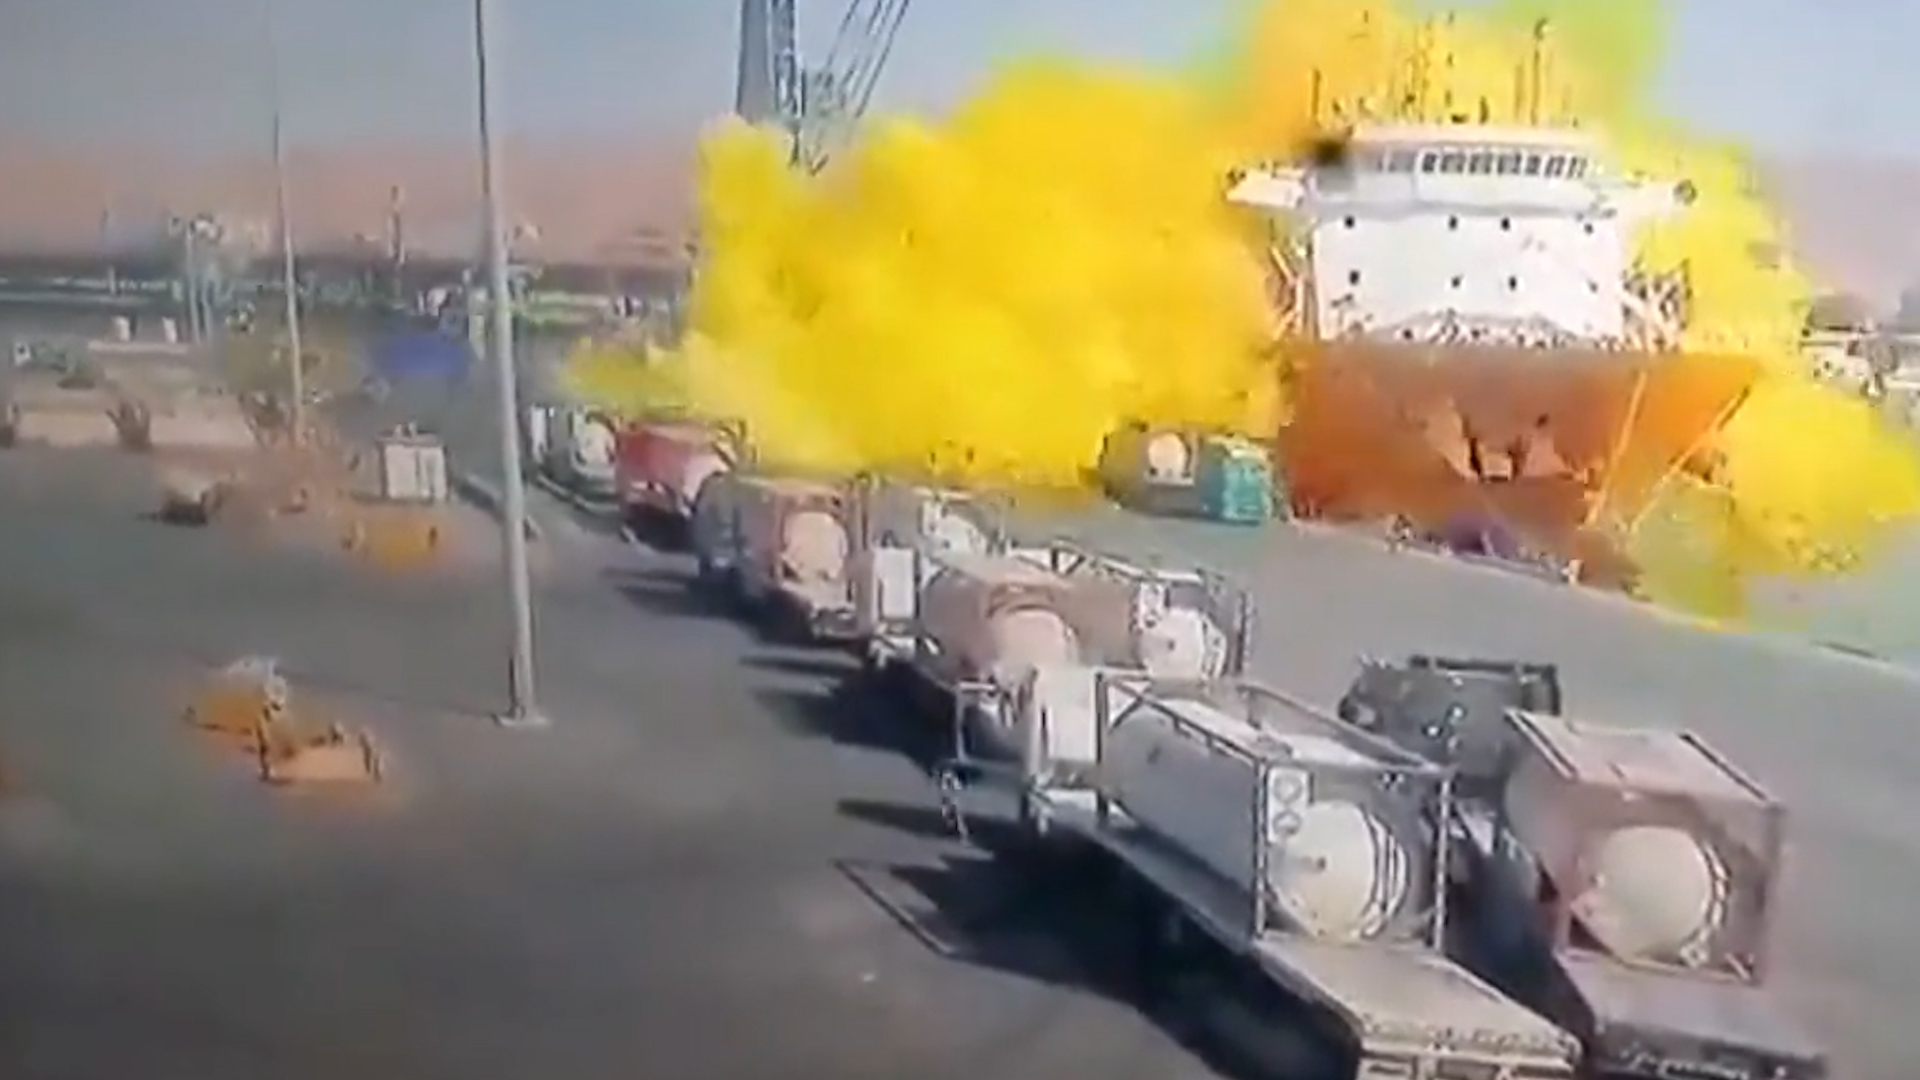 La explosión provocó una enorme nube de un intenso color amarillo